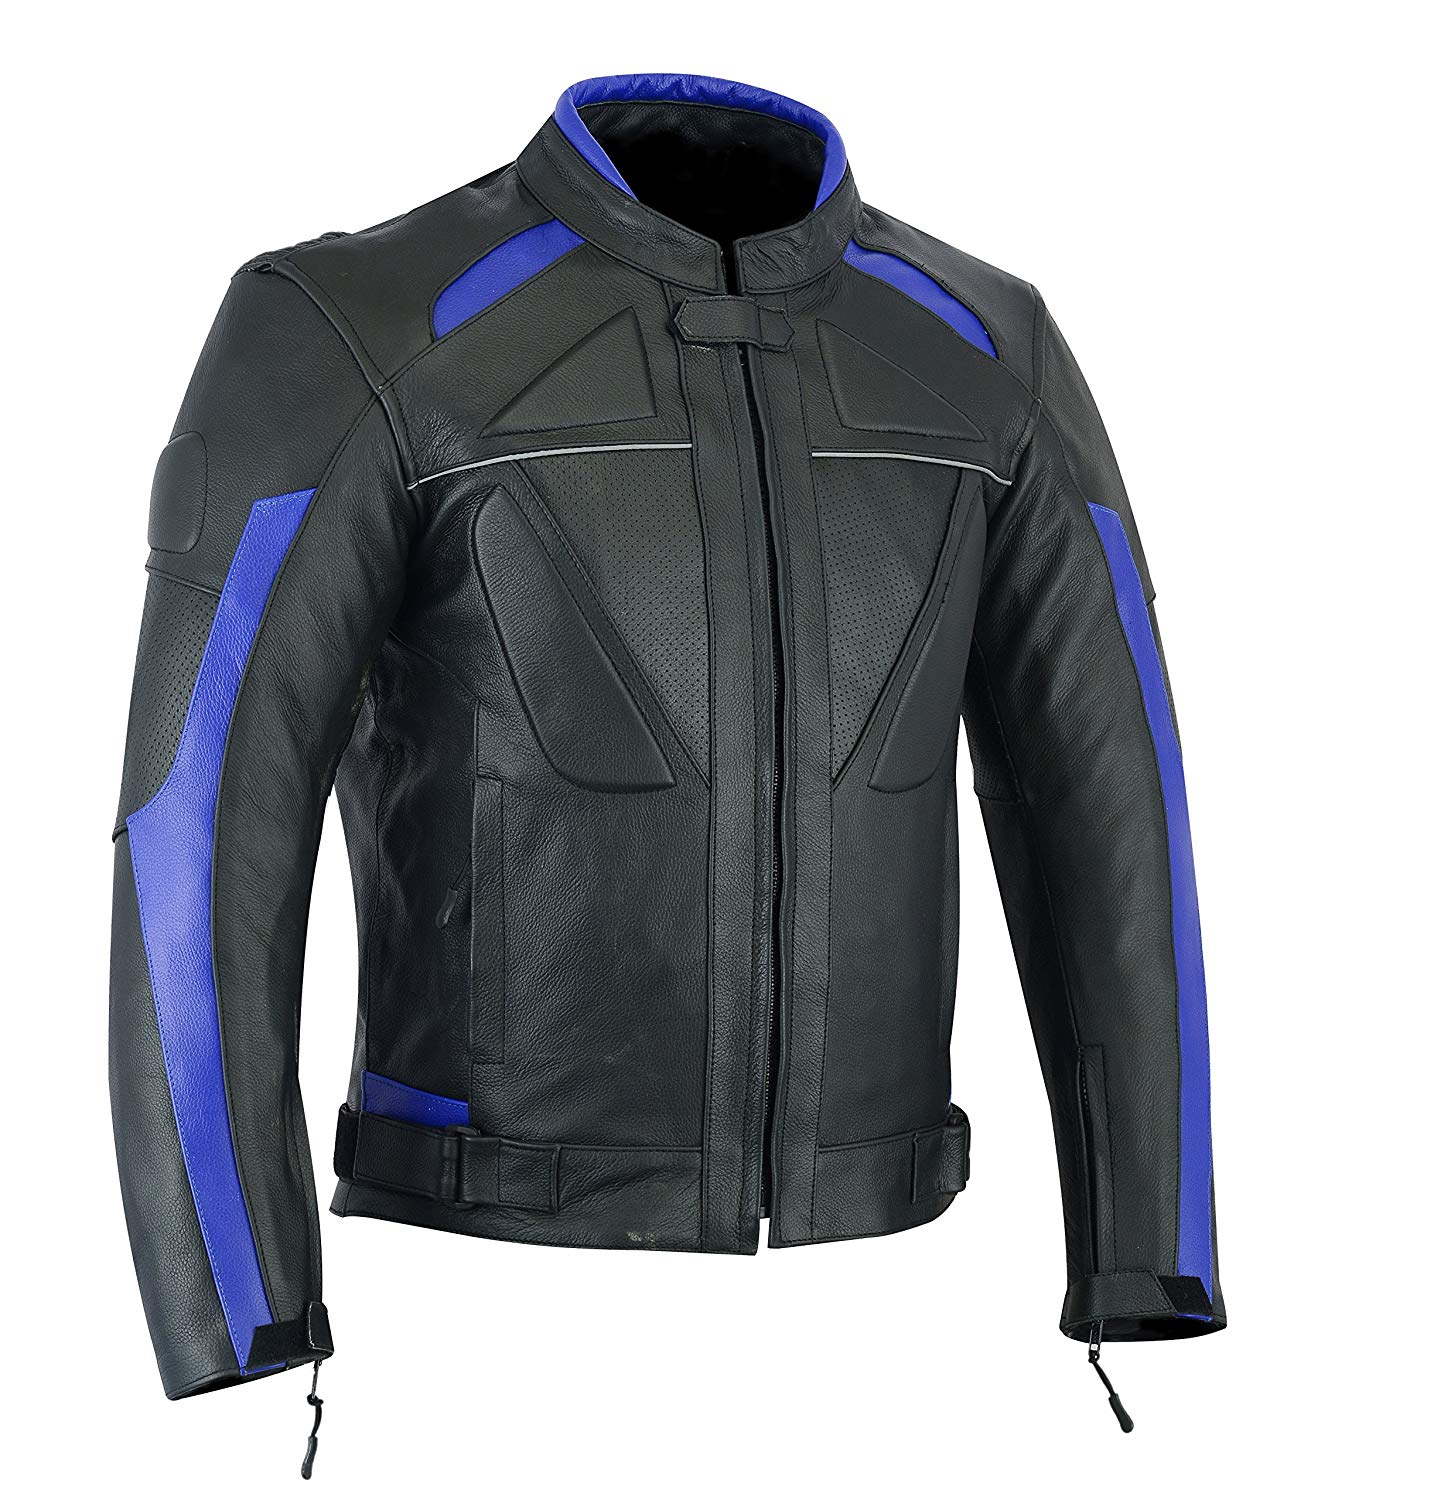 Motor Bike Leather Jacket